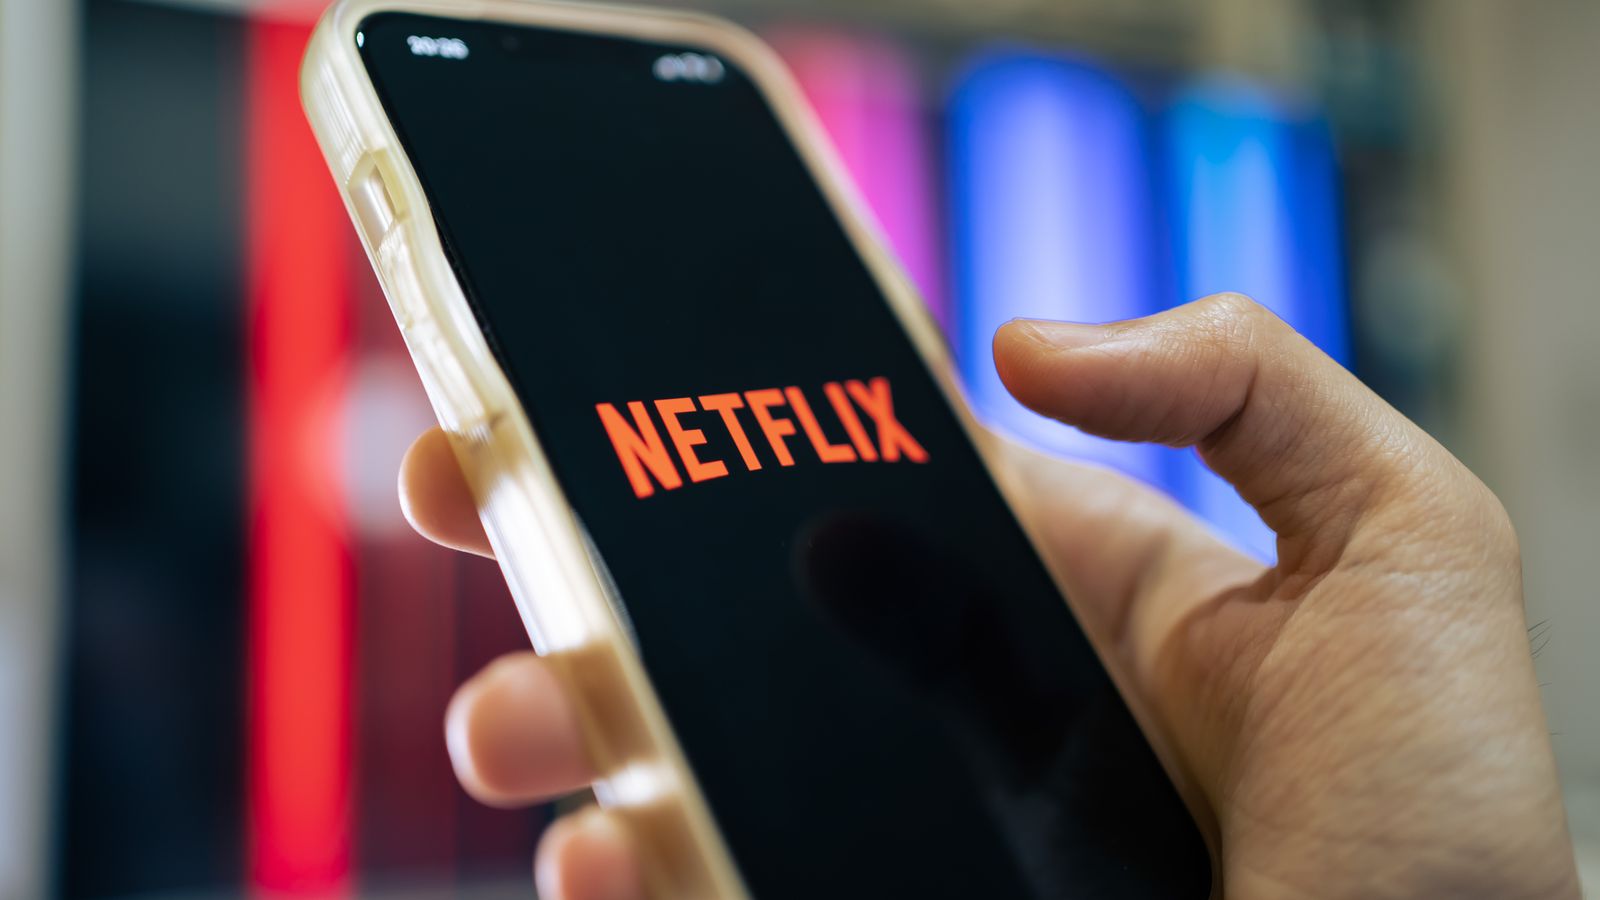 Liczba abonentów Netflix wzrasta po rozprawieniu się z udostępnianiem haseł  Wiadomości biznesowe